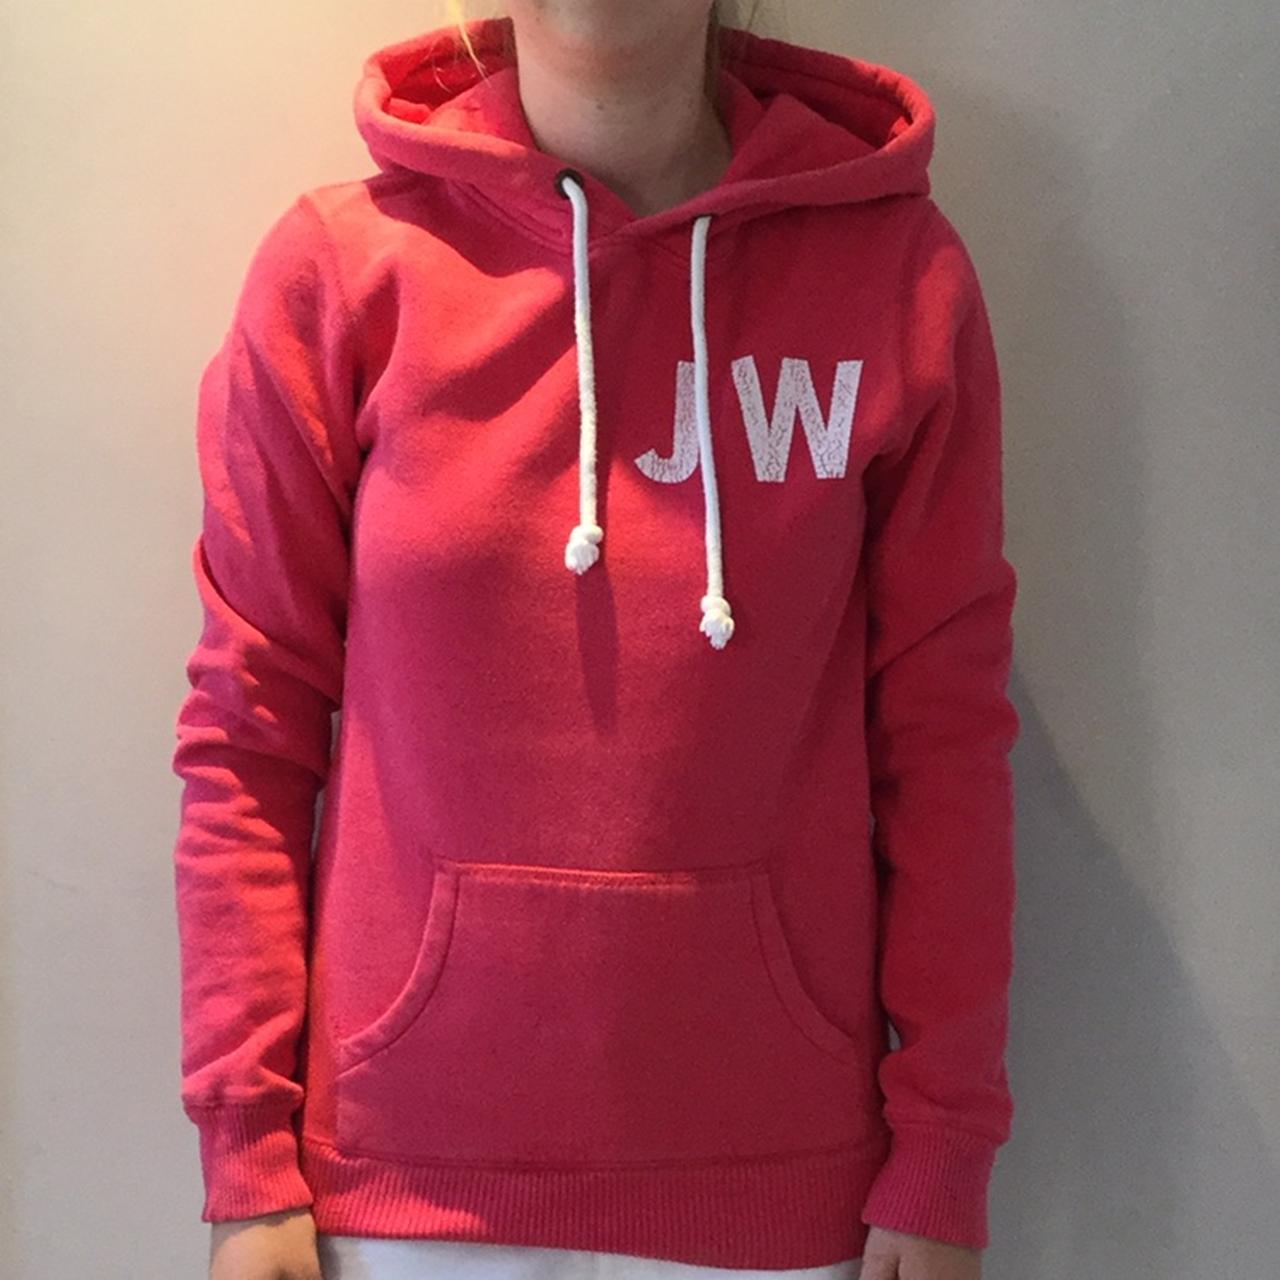 🌟Jack Wills Hoodie🌟 Bright pink Jack Wills hoodie / - Depop